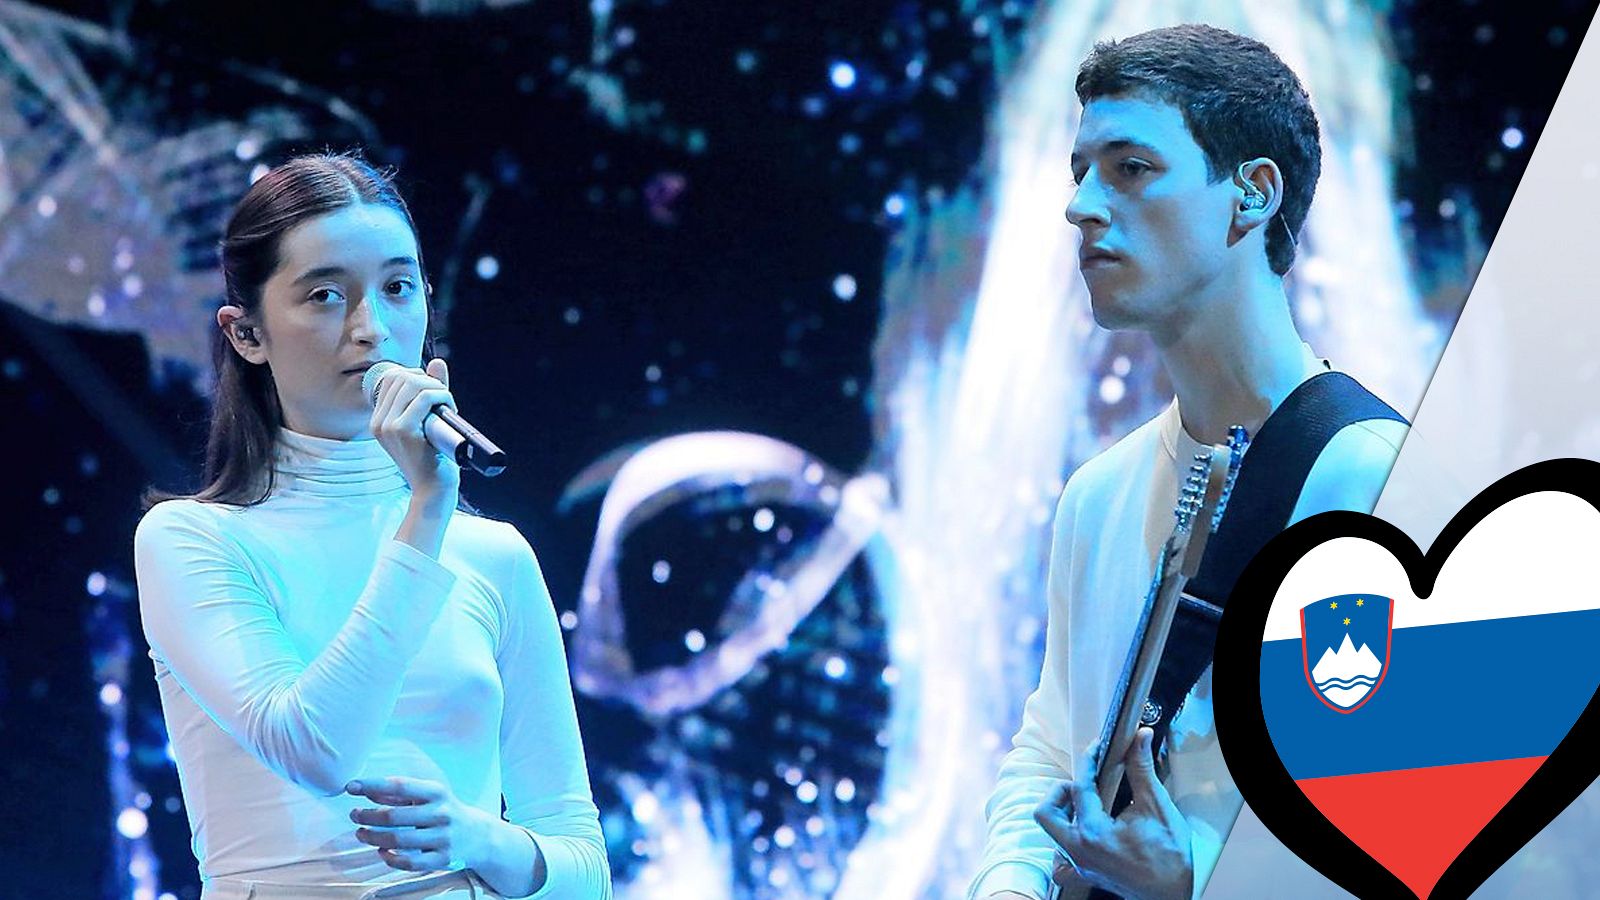 Eurovisión 2019 - Zala Kralj & Gasper Santl (Eslovenia): Videoclip de "Sebi"